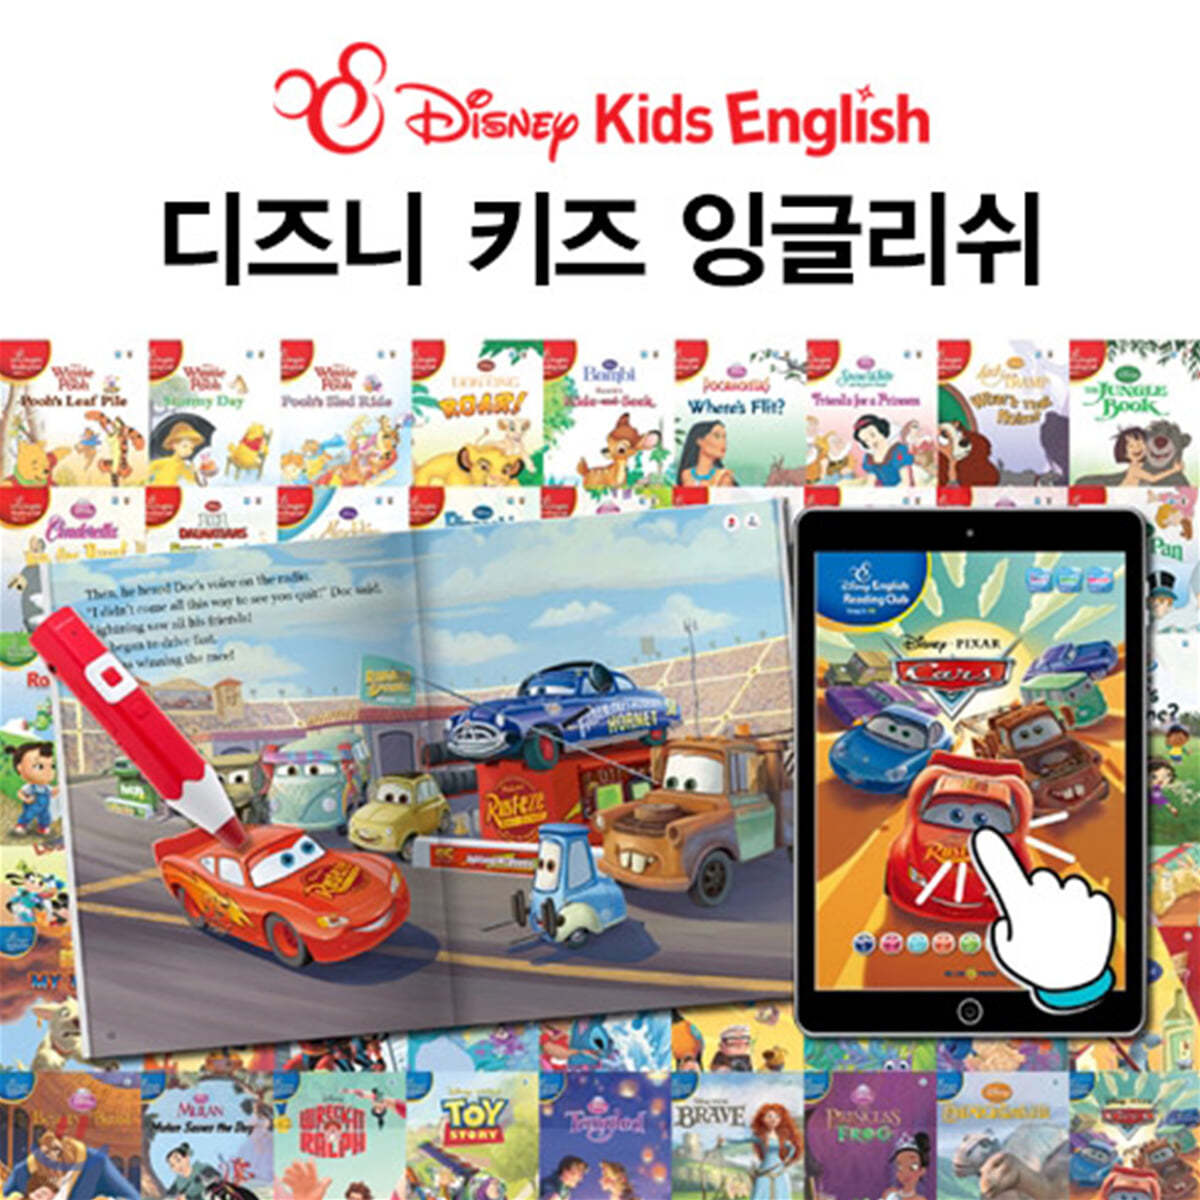 디즈니 키즈 잉글리쉬 (Disney Kids English)